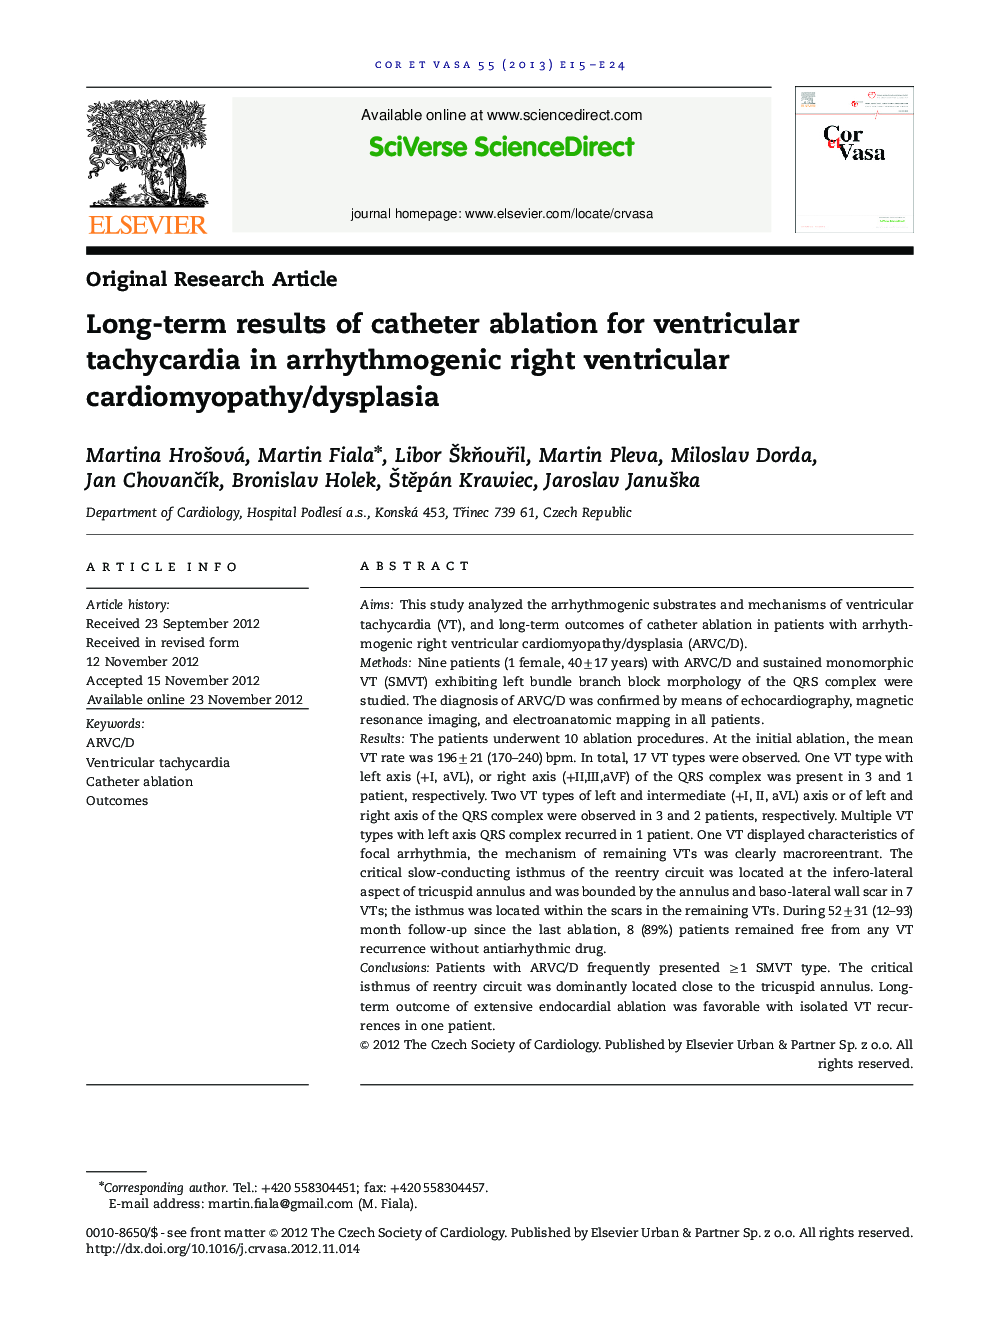 نتایج بلند مدت تخلیه کاتتر برای تاکیکاردی بطنی در کاردیومیوپاتی / دیسپلازی بطنی آرتروژنی 